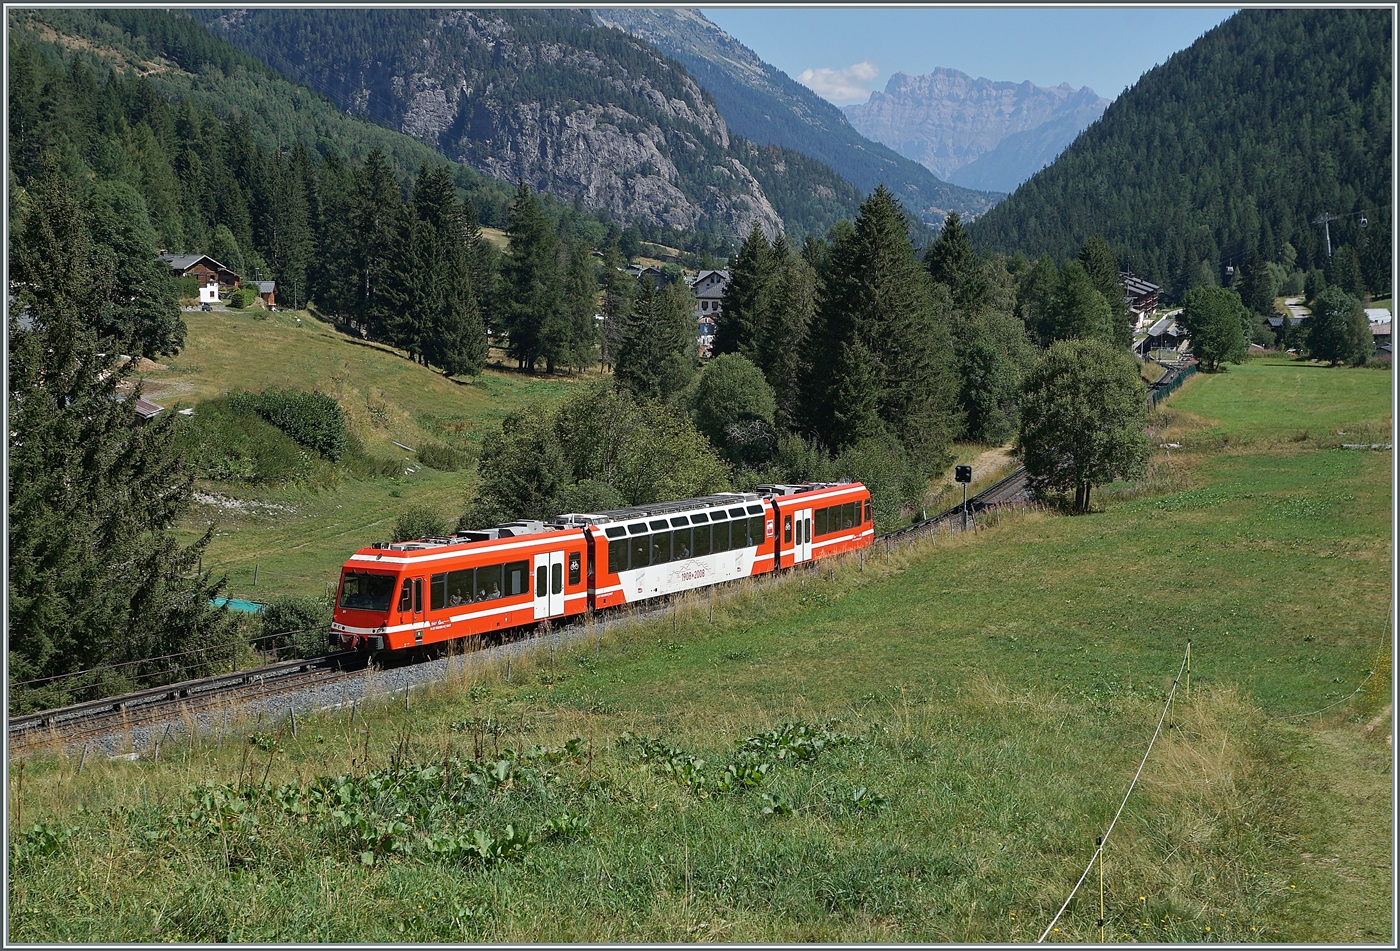 Ein SNCF Z 850 hat Vallorcine verlassen und ist nun auf dem Weg in Richtung Chamonix.

1. August 2022